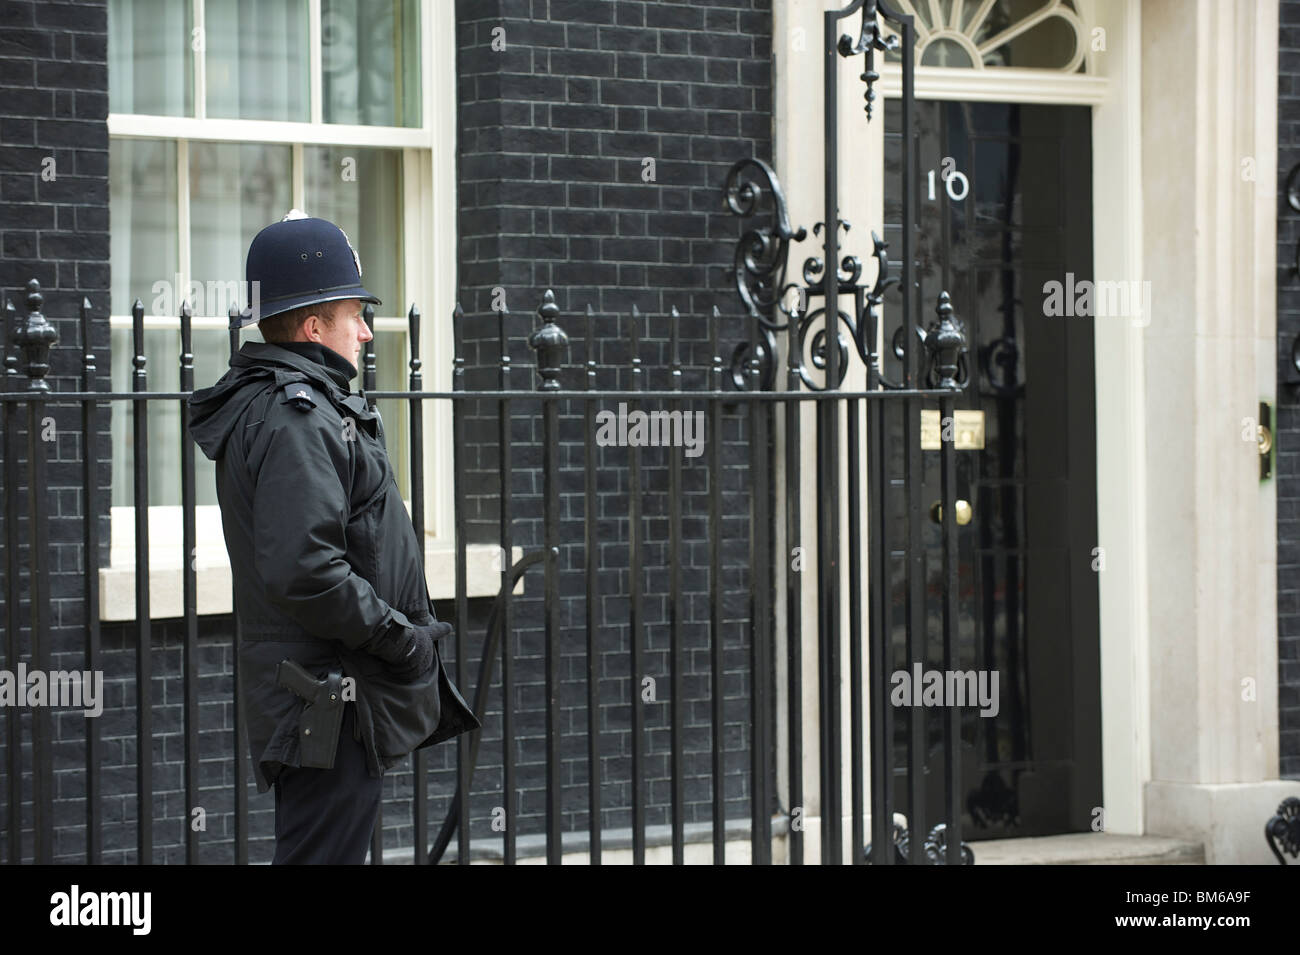 10 Downing Street, Londres. La résidence officielle du Premier ministre britannique, ici avec un policier ou 'Bobby' à l'extérieur. Banque D'Images